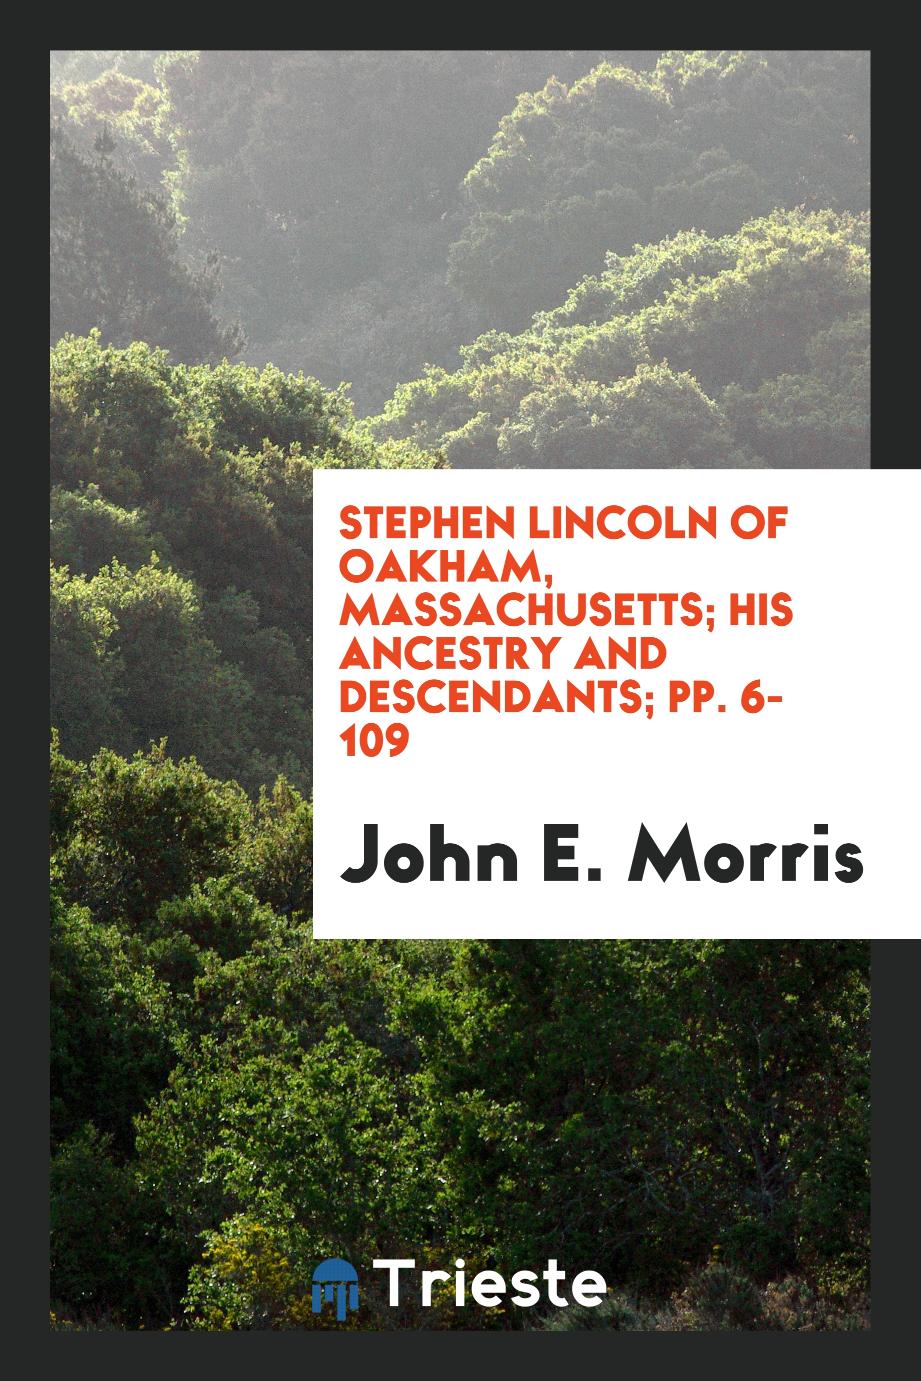 Stephen Lincoln of Oakham, Massachusetts; His Ancestry and Descendants; pp. 6-109